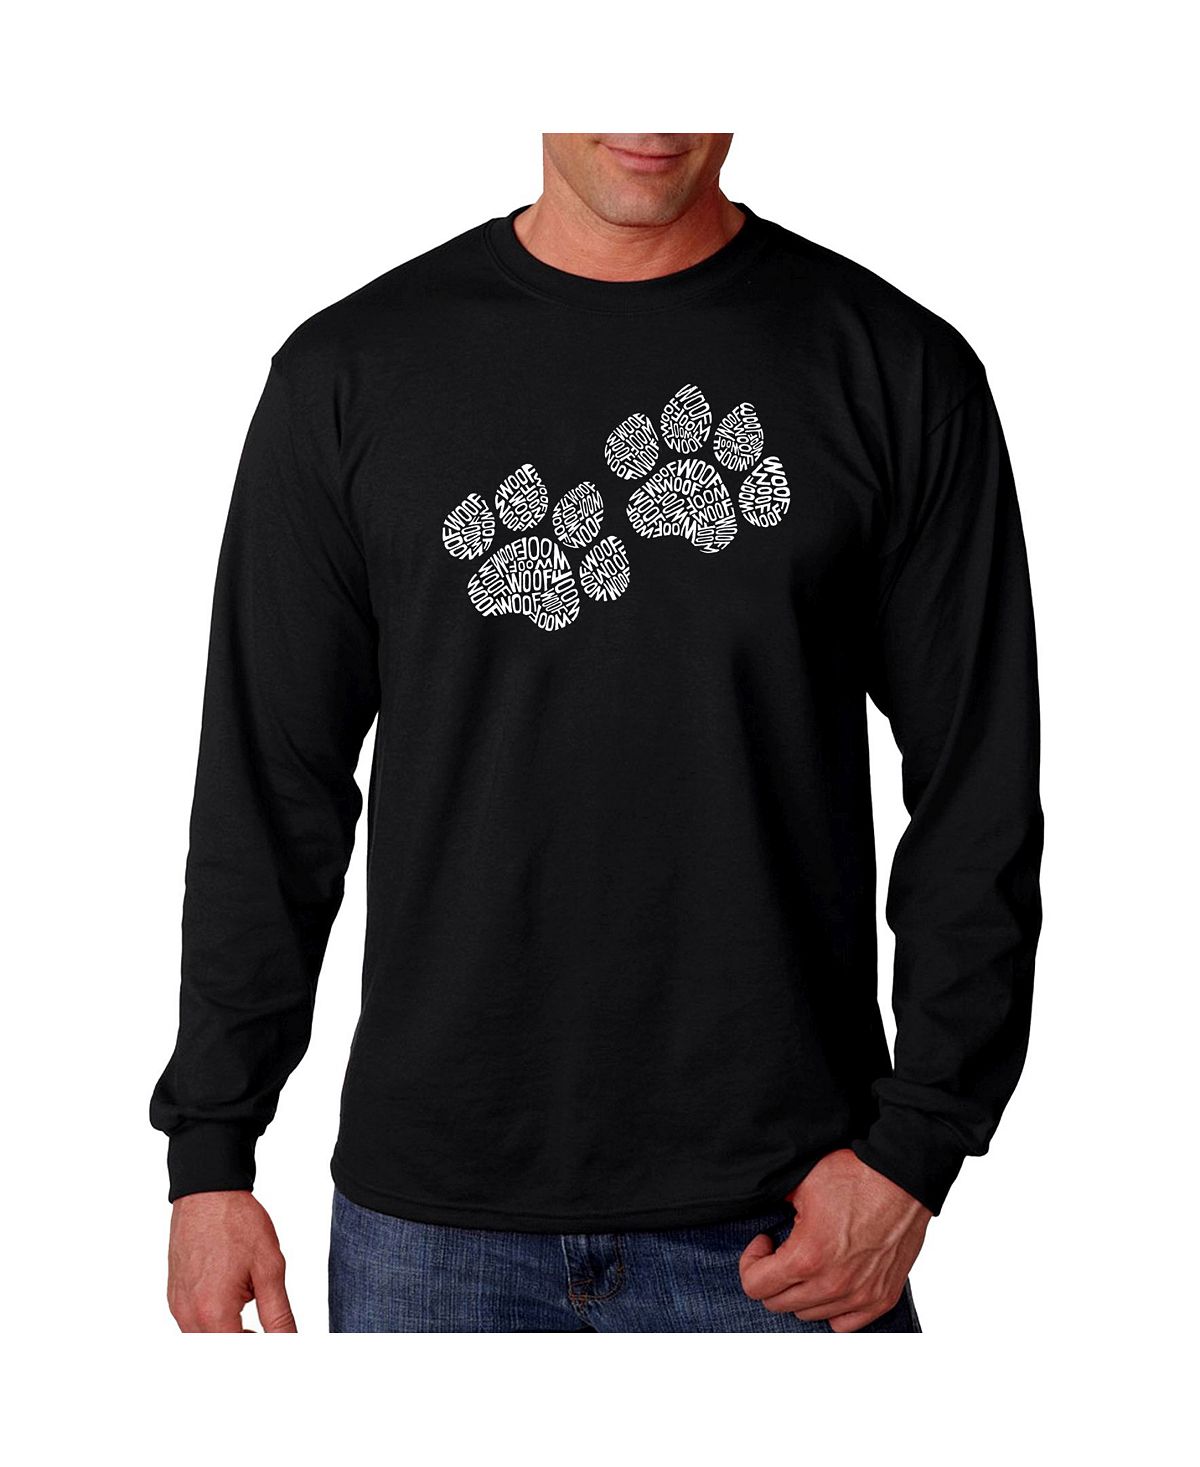 Мужская футболка с длинным рукавом word art - woof paw prints LA Pop Art, черный